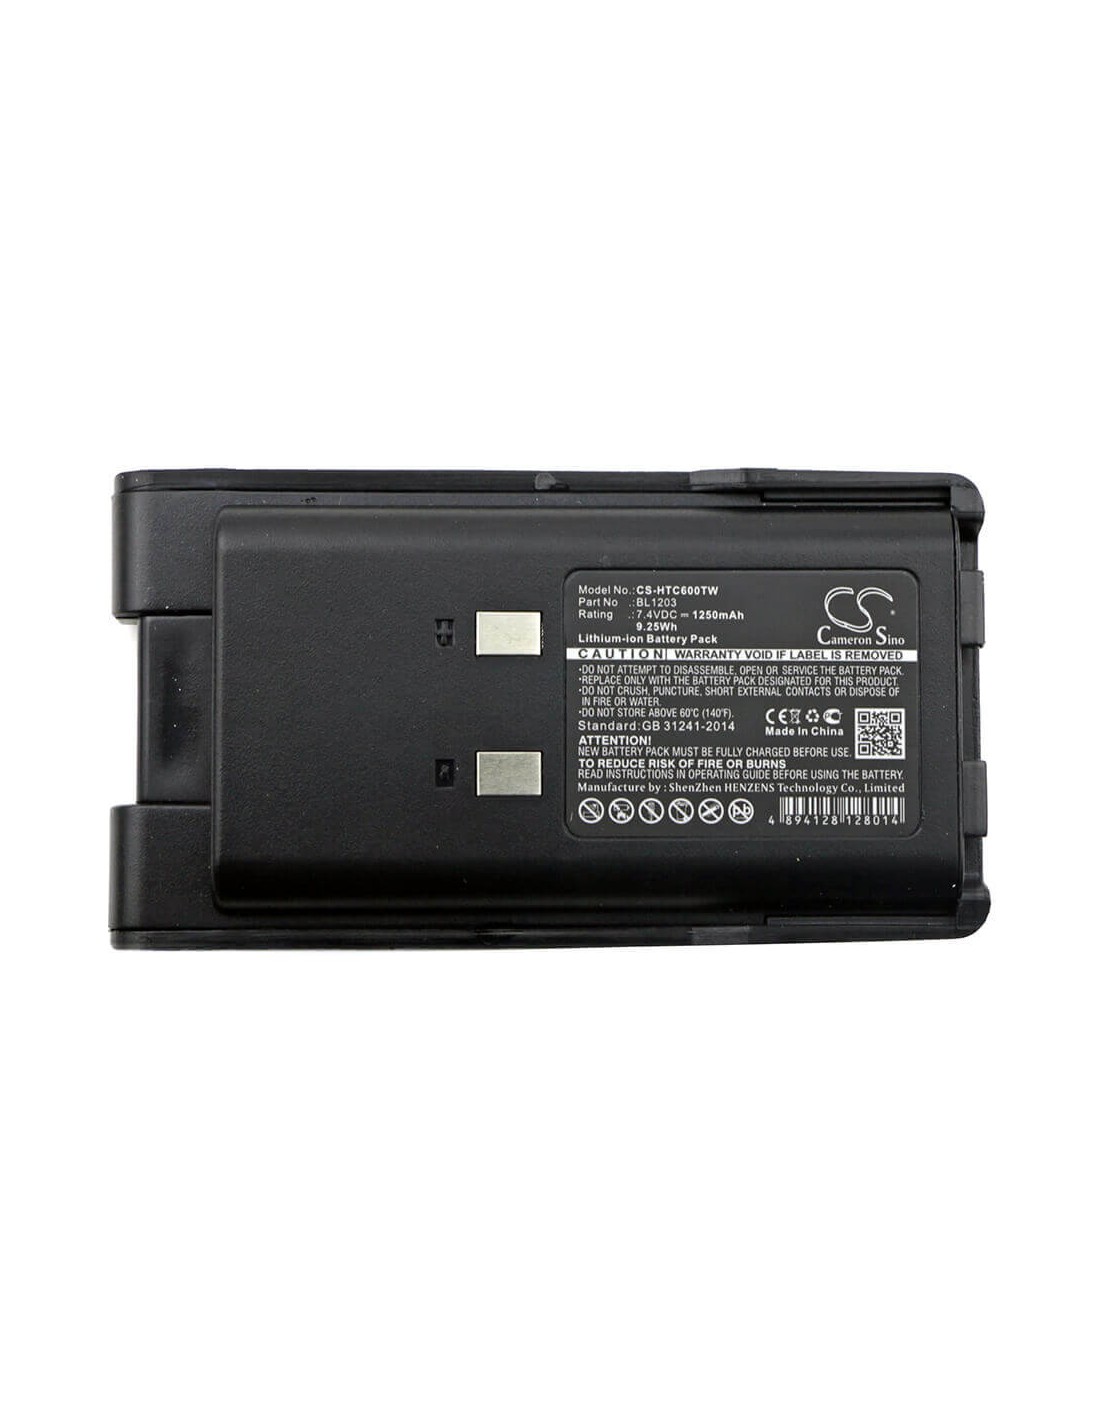 Battery for Hyt Tc600, Tc-600 7.4V, 1250mAh - 9.25Wh